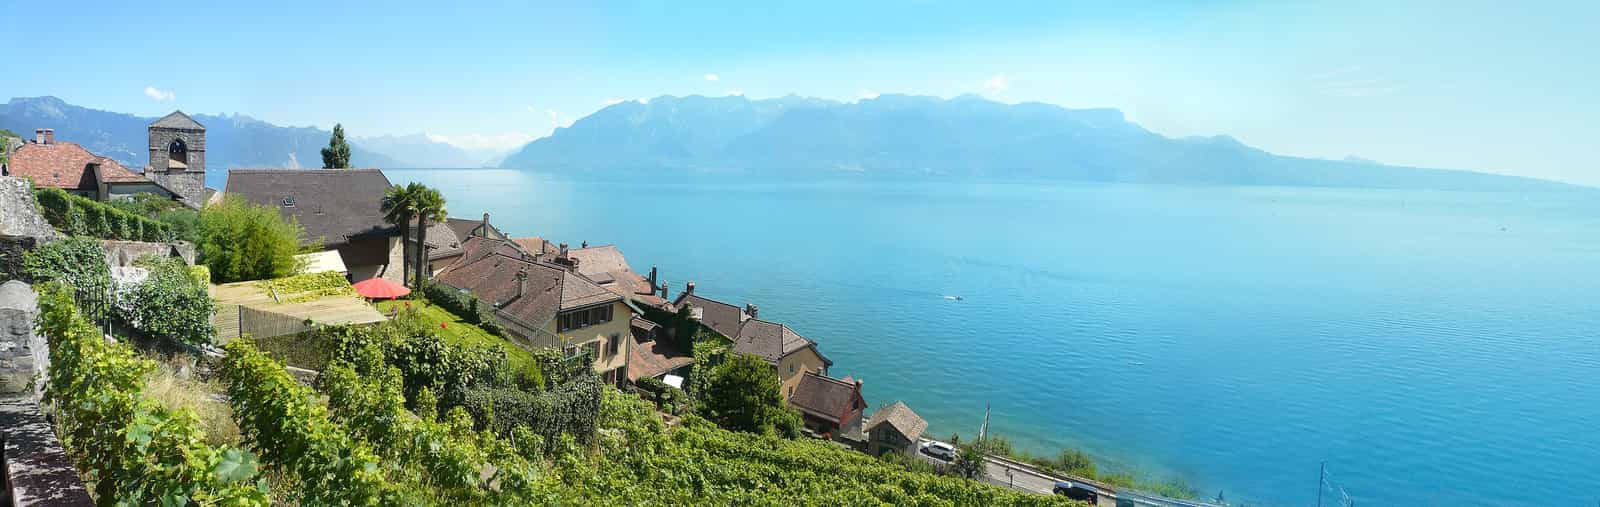 Il villaggio svizzero di Saint-Saphorin e la sua chiesa protestante circondata dalle colline di Lavaux, sulle rive del Lago di Ginevra a ovest di Vevey, di fronte all'estremità settentrionale delle Alpi francesi (davanti e a destra).